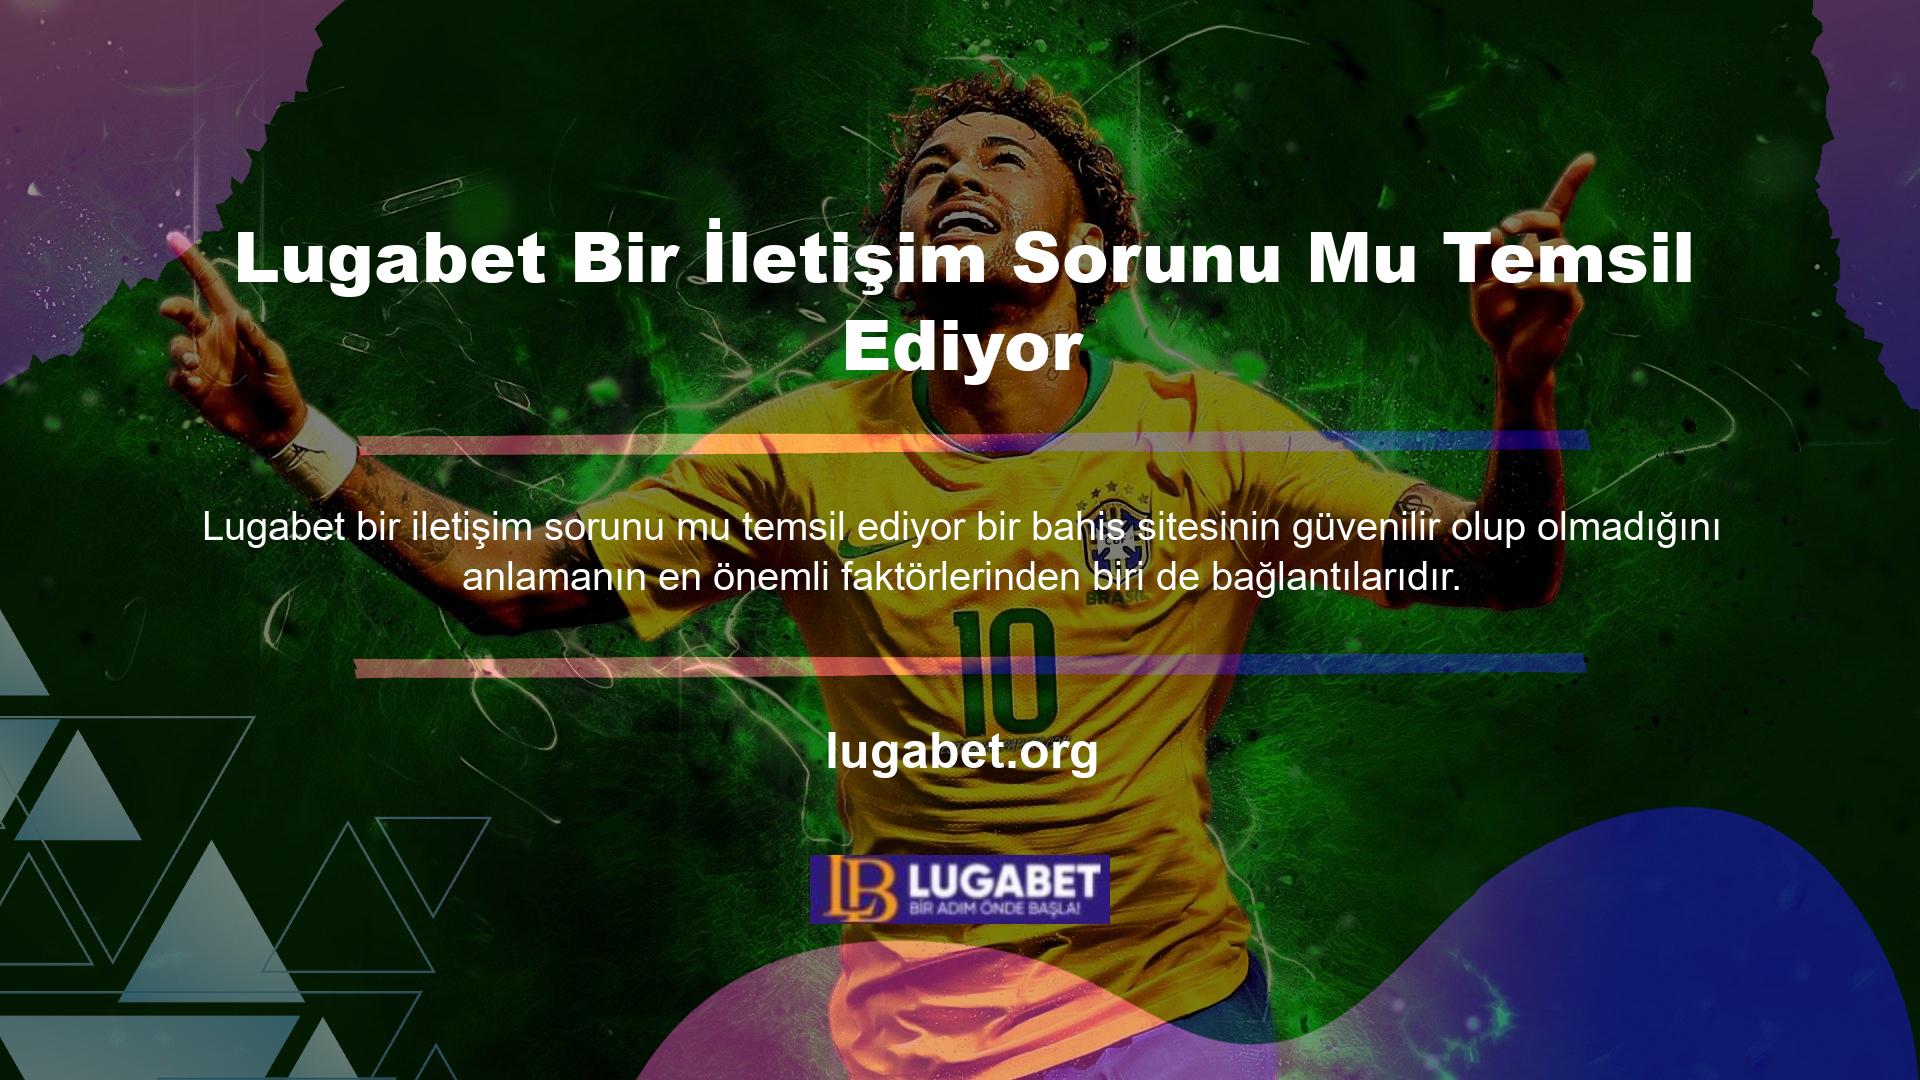 Lugabet, birden fazla iletişim merkezine sahip, iletişim sorunu olmayan bir casino sitesidir